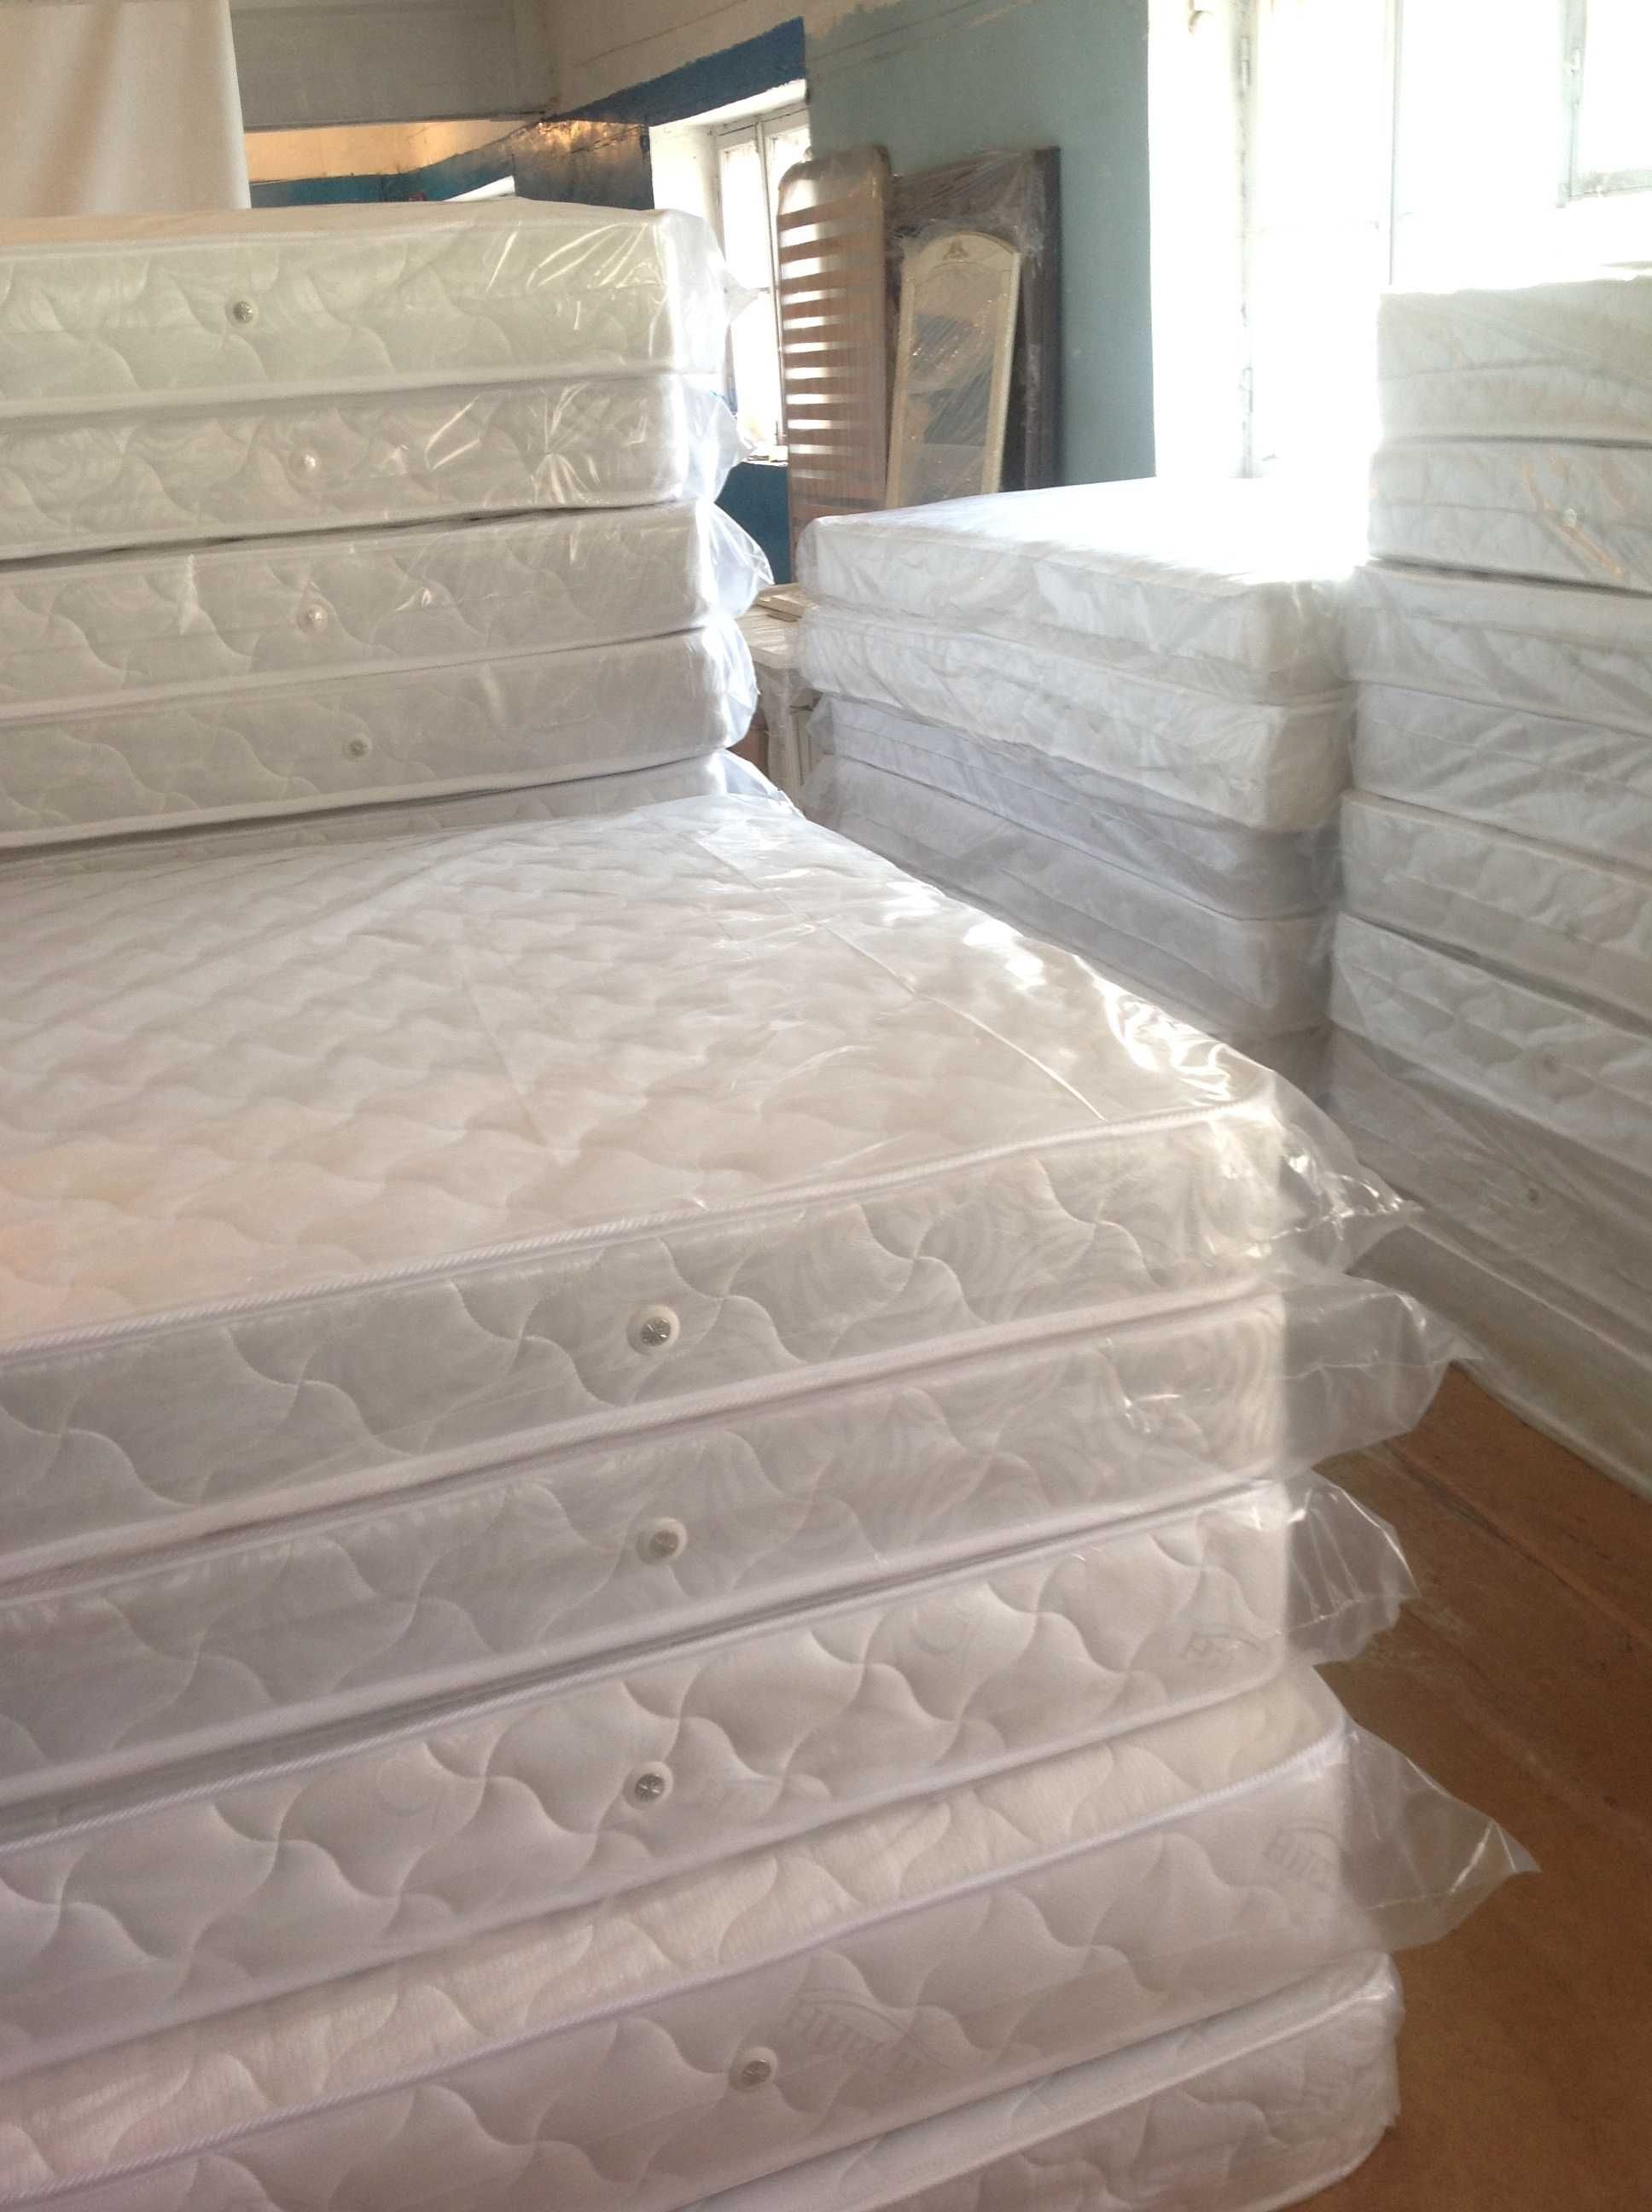 Деревянная кровать Адель белый и натуральный цвет. От производителя!